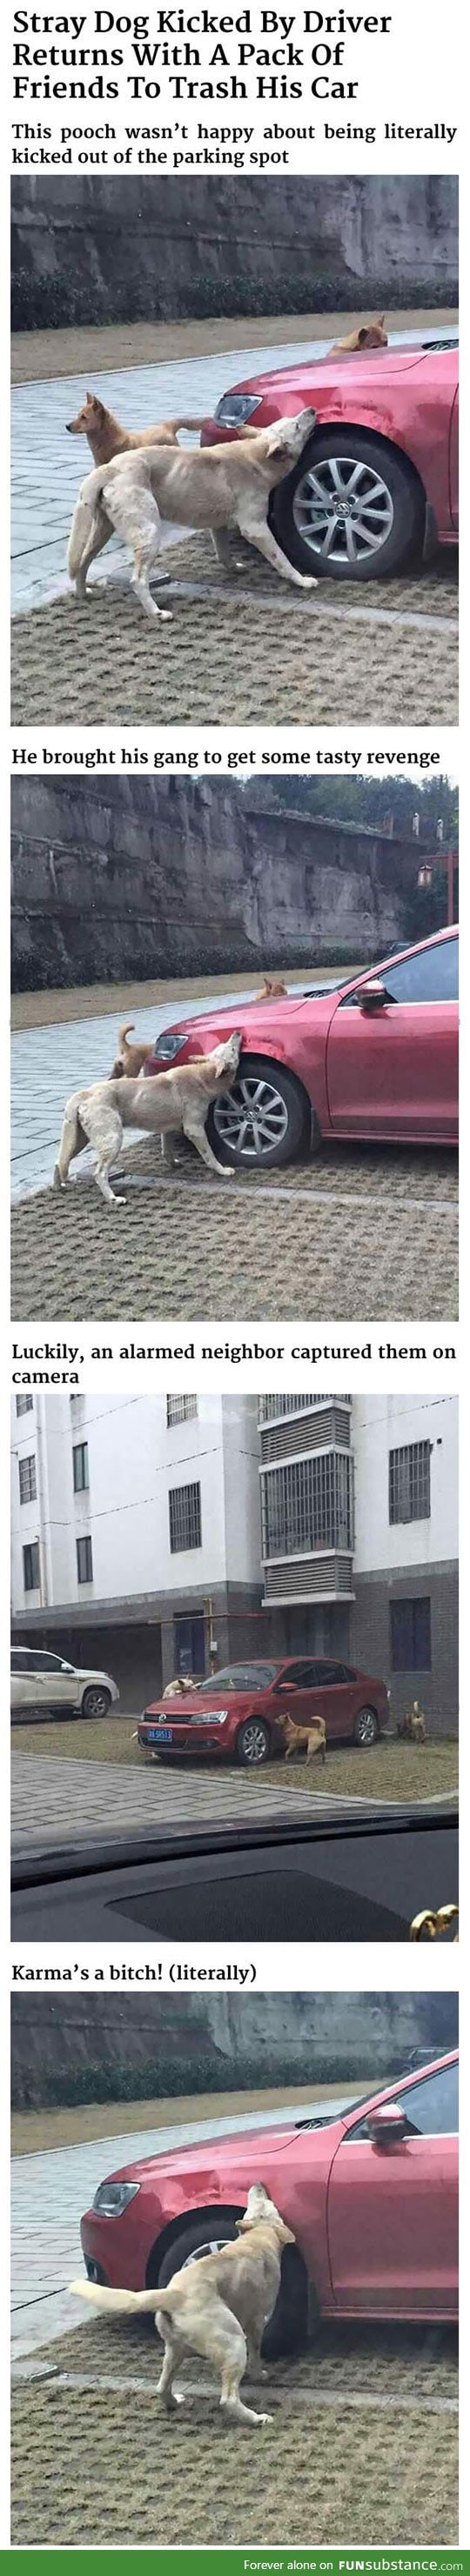 Dogs getting revenge